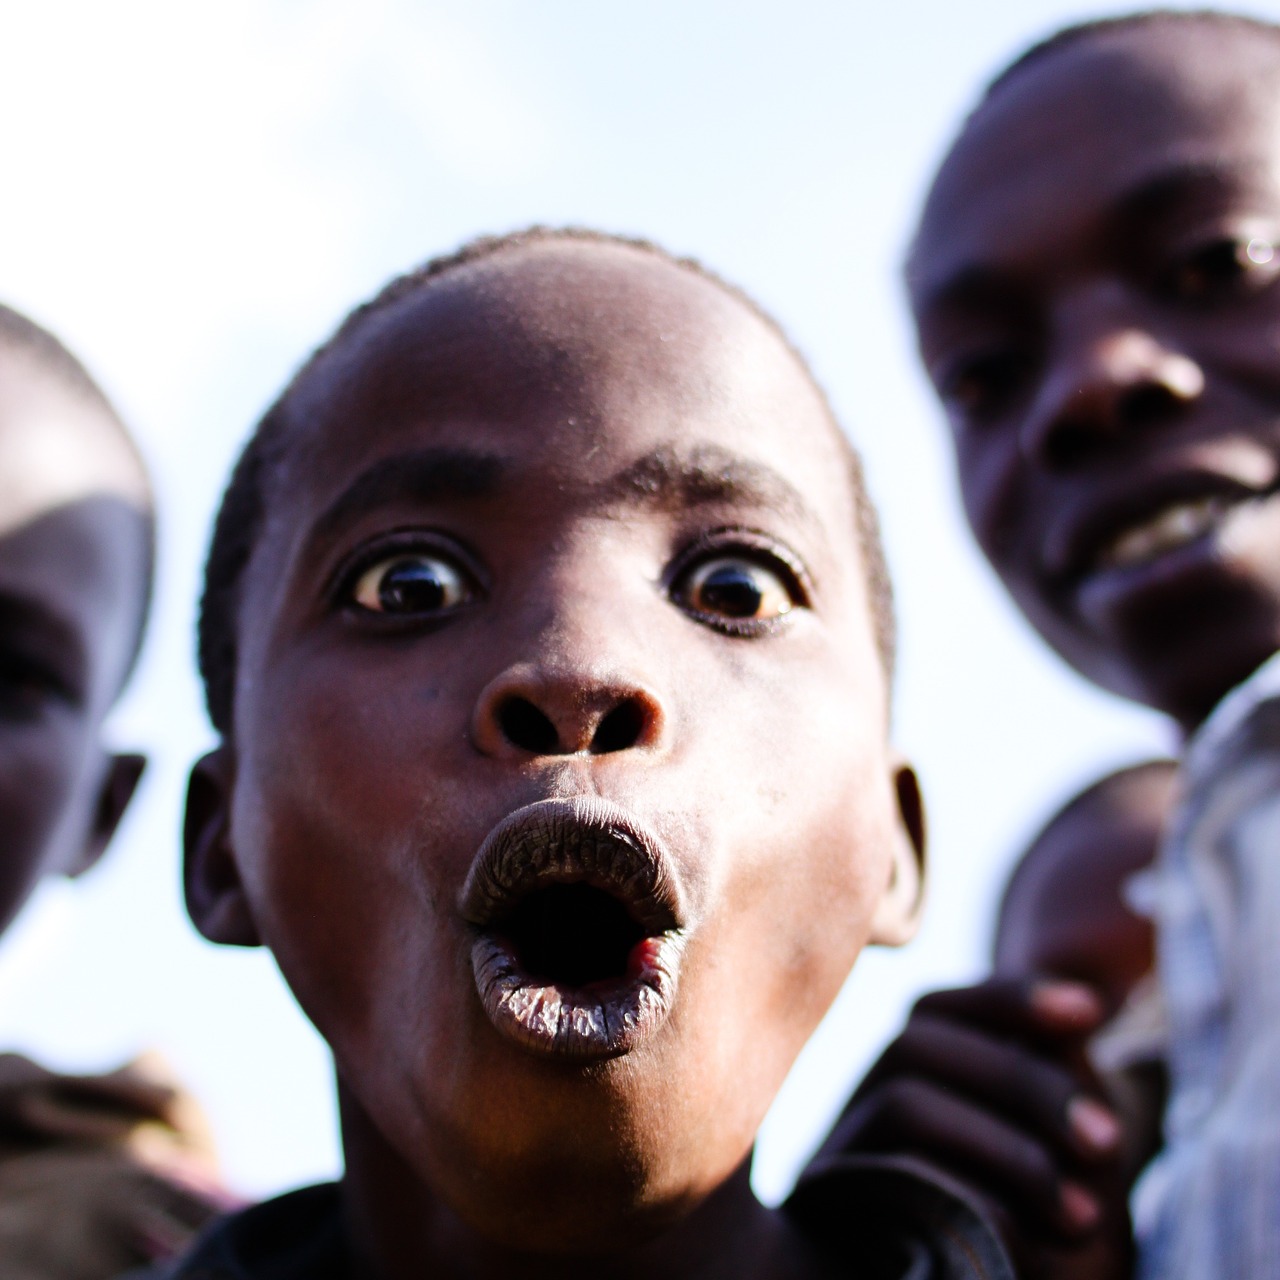 burundi face surprised free photo